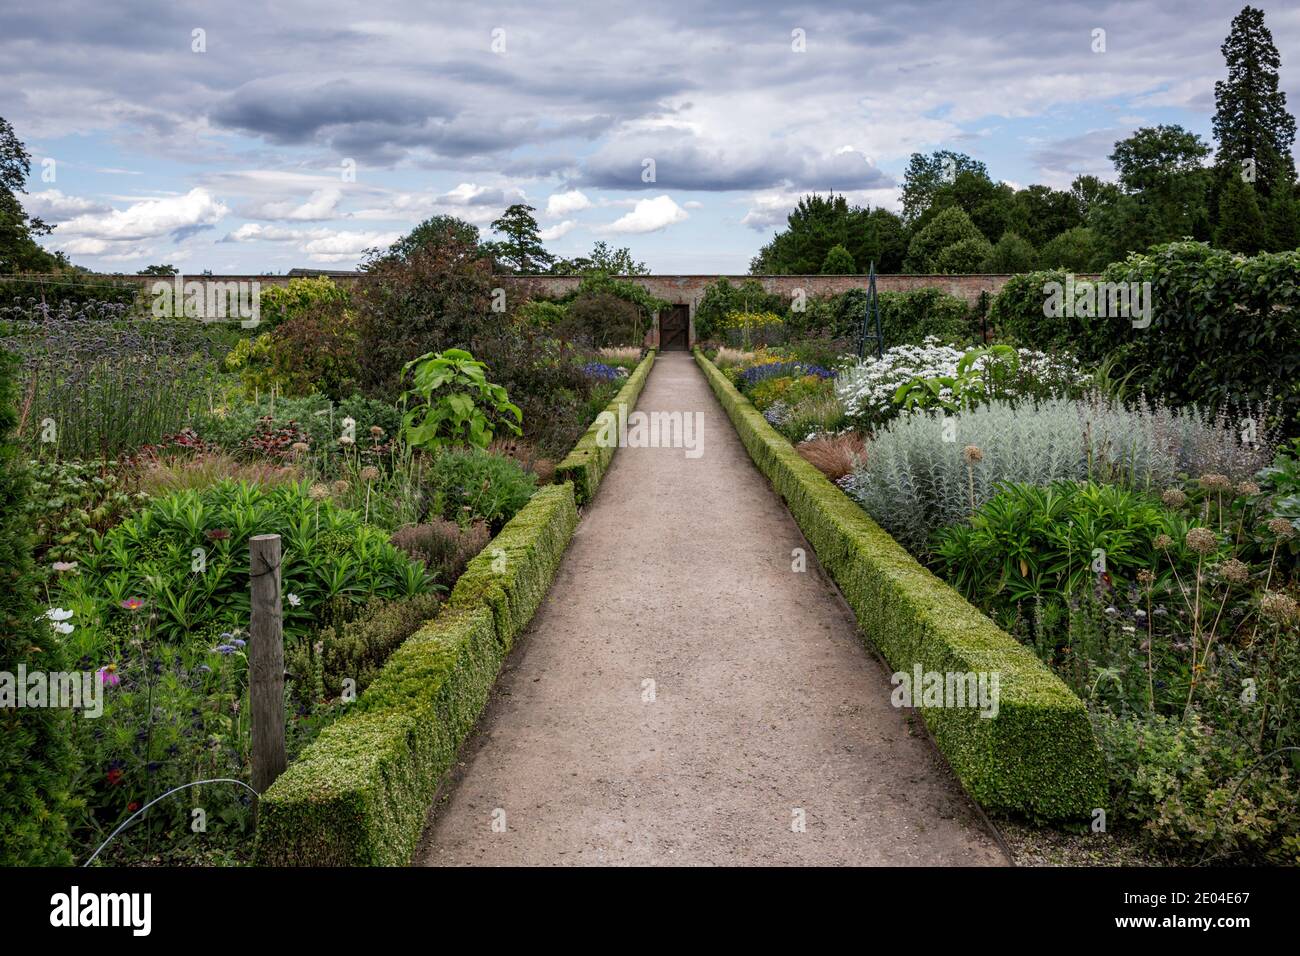 Il giardino murato di Wimpole Hall, una casa di campagna situata nella tenuta di Wimpole, Cambridgeshire, Inghilterra. Foto Stock